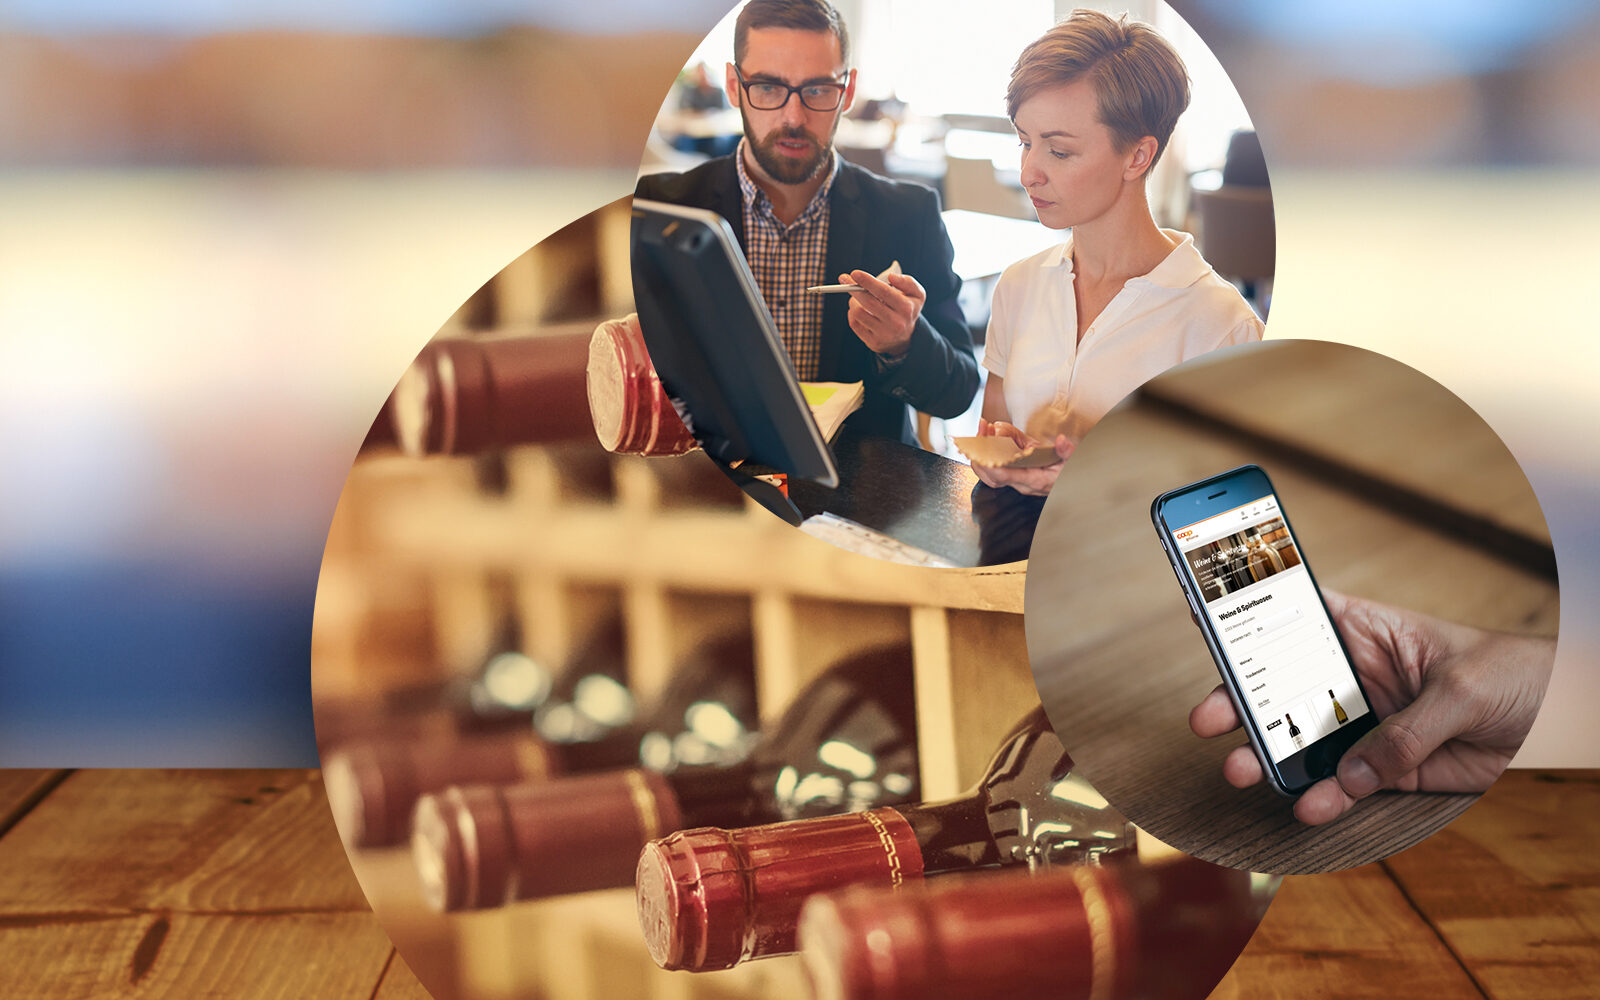 Bild von Weinflaschen in einem Weinregal, einem Handy, auf dem ein Onlineshop geöffnet ist sowie von zwei Personen in einem Beratungsgespräch, valantic Customer Experience (CX)